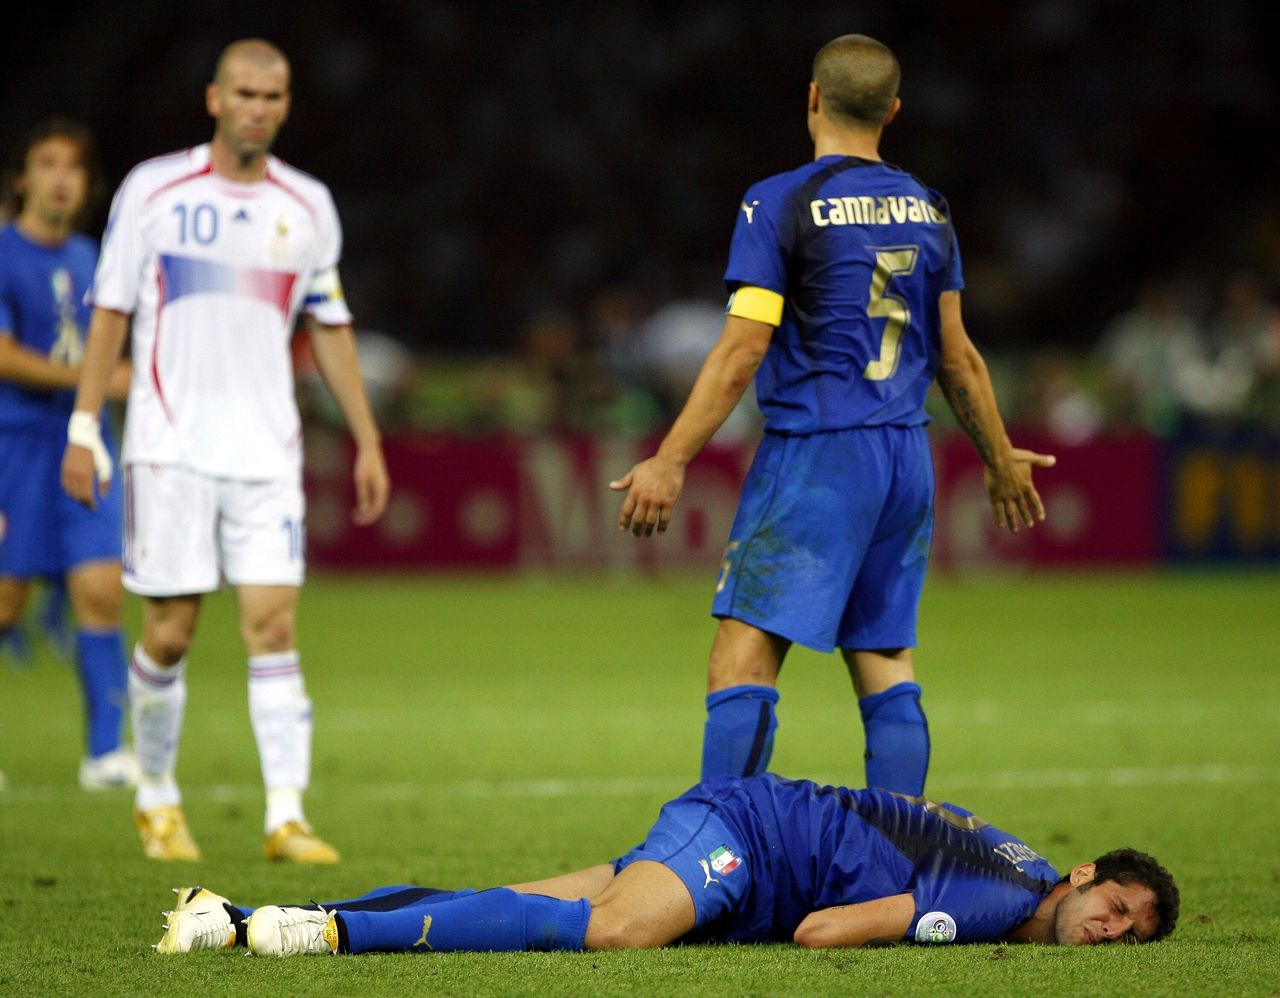 Βερολίνο, Ολυμπιακό Στάδιο, 9 Ιουλίου 2006. Η περίφημη κουτουλιά του αρχηγού της εθνικής Γαλλίας, Ζινεντίν Ζιντάν, στο στήθος του αμυντικού της Ιταλίας Μάρκο Ματεράτσι στον τελικό. Ο Καναβάρο με το νούμερο 5 διαμαρτύρεται, ο Ζιντάν αποβάλλεται και η Ιταλία θα επικρατήσει στα πέναλντι με 5-3, κατακτώντας για τέταρτη φορά το Παγκόσμιο Κύπελλο.<br>Πίσω από τον Ζιντάν ο Αντρέα Πίρλο.